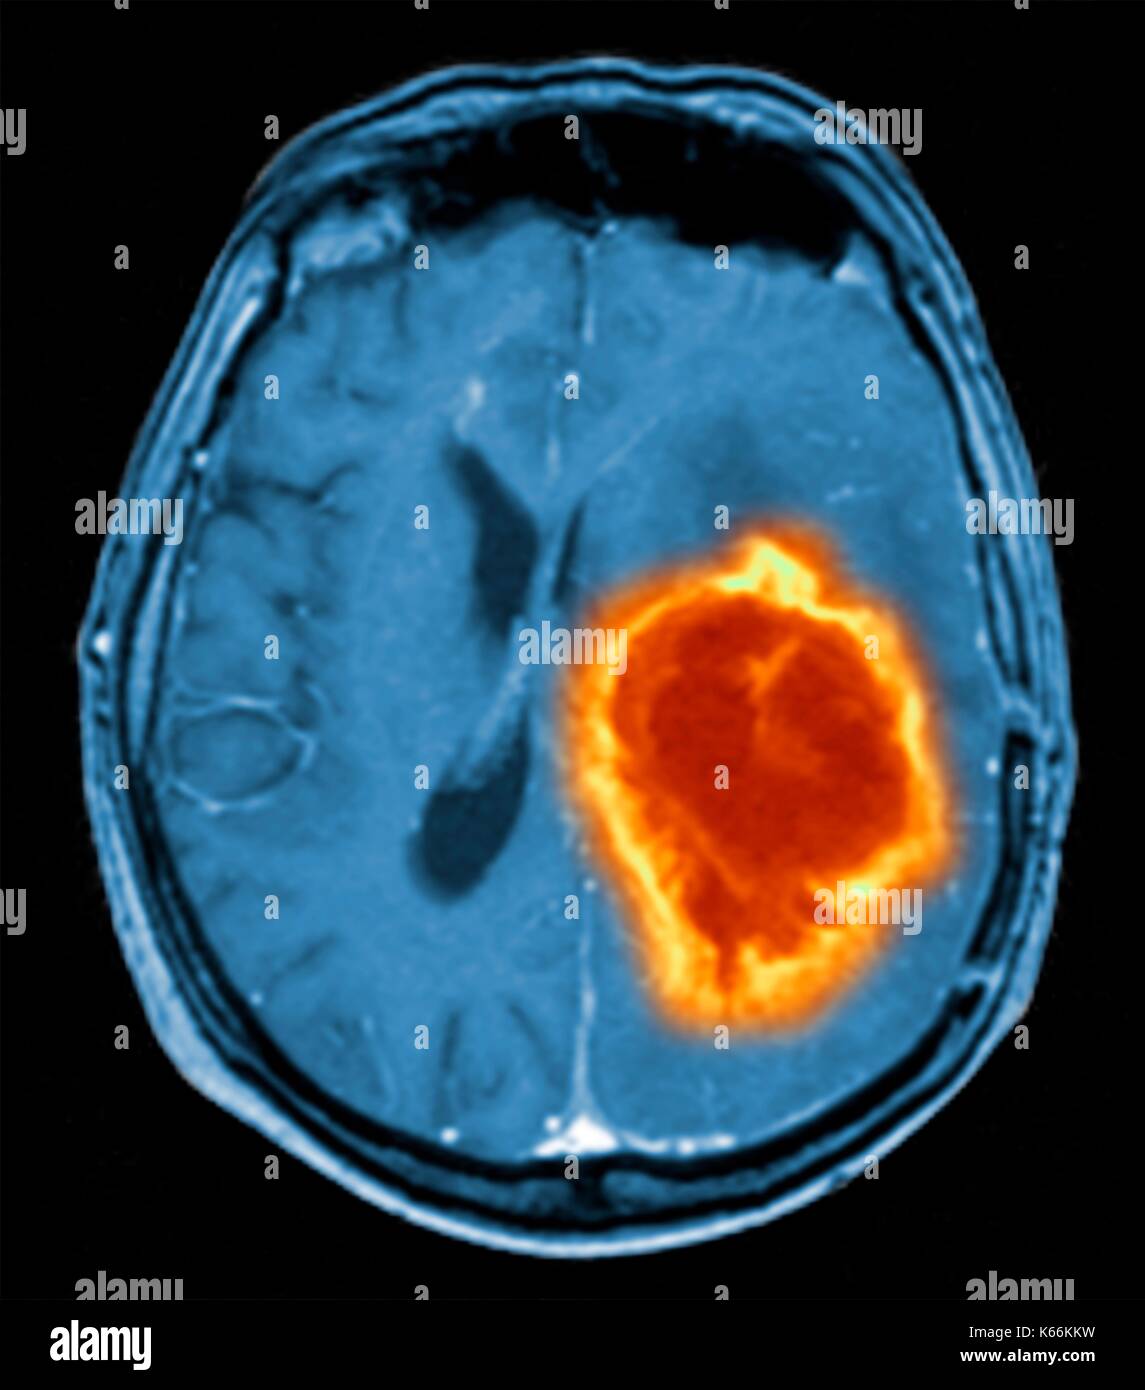 Tumeur au cerveau. L'imagerie par résonance magnétique de couleur (IRM) d'une section axiale à travers le cerveau montrant une tumeur métastatique. En bas à gauche est la tumeur (rouge-jaune) Cette tumeur est atteinte dans l'hémisphère cérébral ; l'autre hémisphère est à droite. Les globes oculaires - non visible -sont en haut. Cancer métastatique est un cancer secondaire de la propagation de la maladie d'ailleurs dans l'organisme. Les tumeurs cérébrales métastatiques sont malignes. Ils causent généralement des dommages nerveux et compression du cerveau Banque D'Images